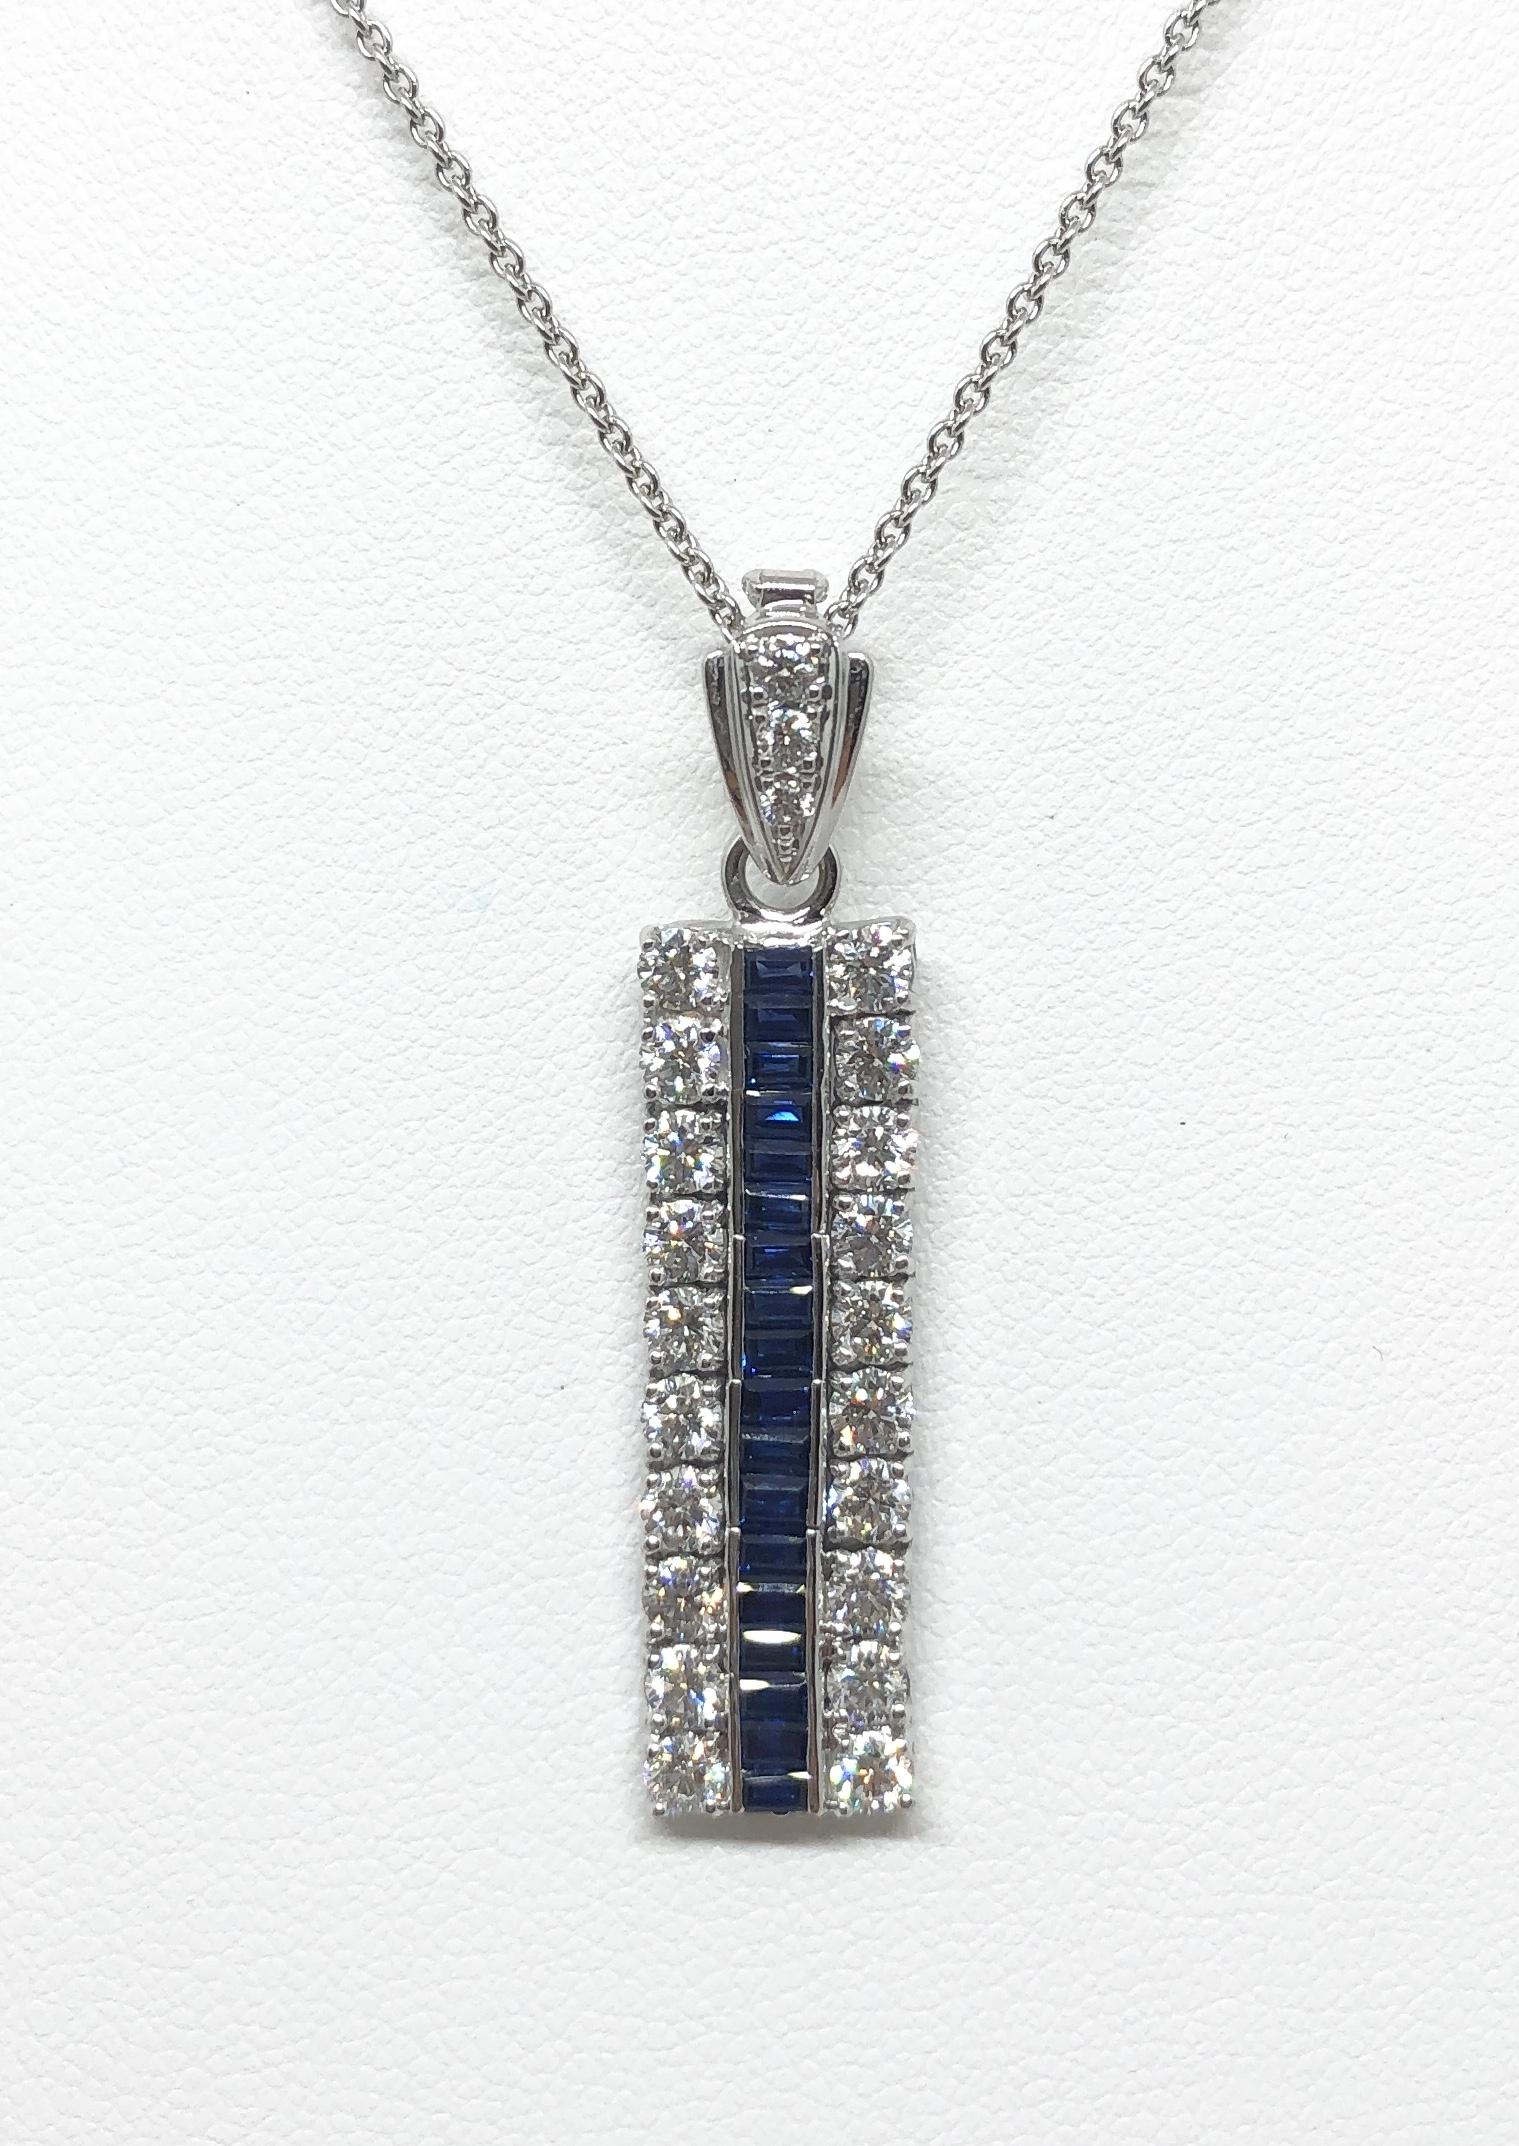 Blauer Saphir 0,75 Karat mit Diamant 1,30 Karat Anhänger in 18 Karat Weißgold gefasst
(Kette nicht enthalten)

Breite: 0.9 cm 
Länge: 4.0 cm
Gesamtgewicht: 6,92 Gramm

